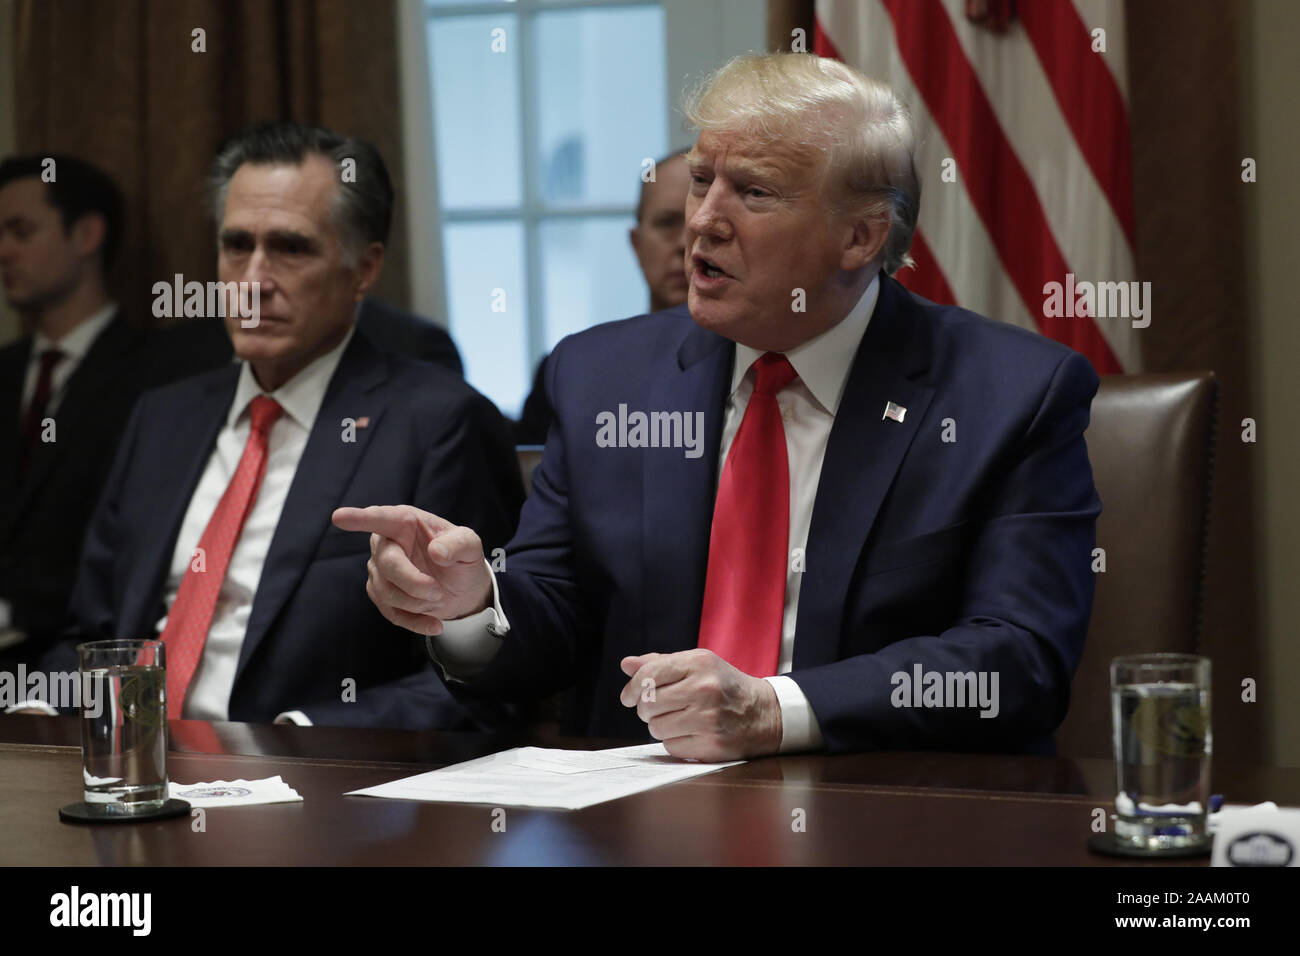 Washington, Estados Unidos. 22 Nov, 2019. El Presidente de Estados Unidos, Donald Trump, habla durante una reunión sobre la juventud y el cigarrillo electrónico vaping epidemia en la Sala del Gabinete de la Casa Blanca en Washington, DC el viernes, 22 de noviembre de 2019. Foto de stock